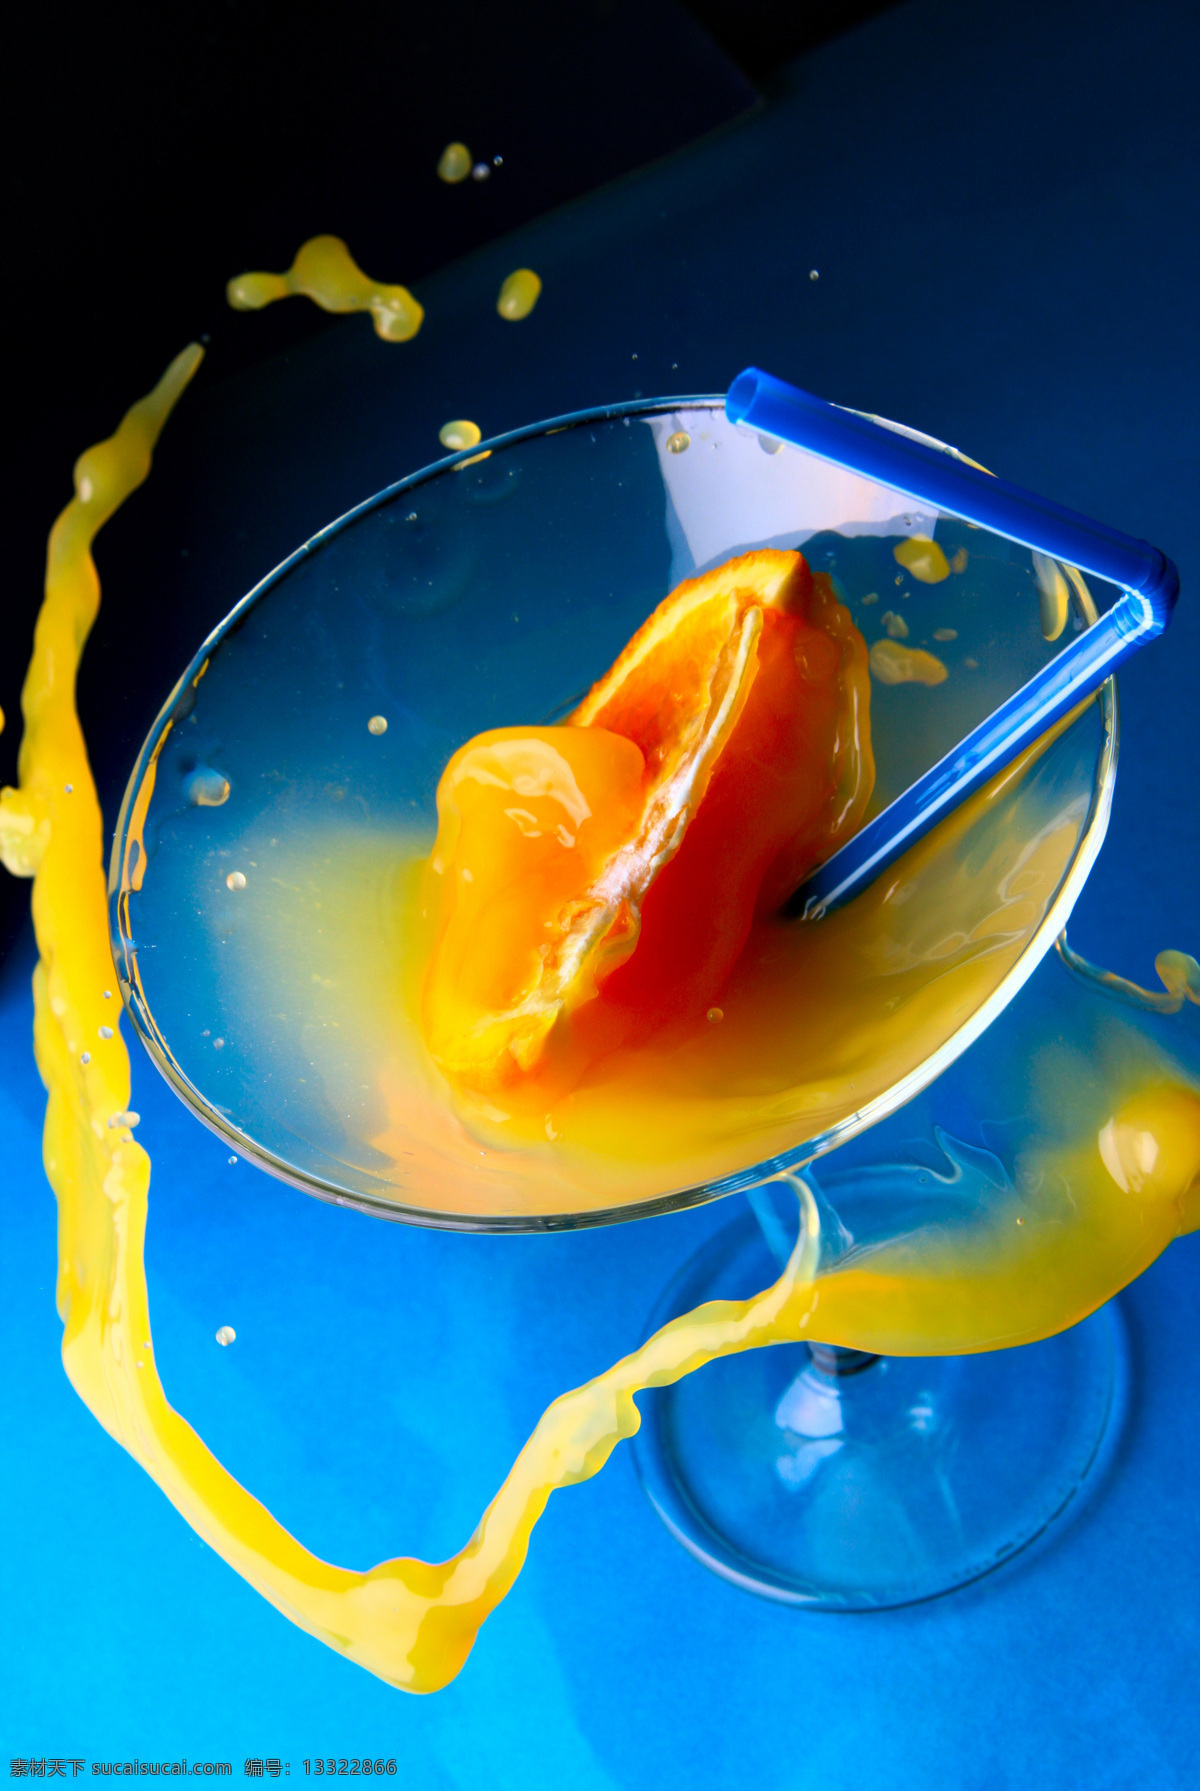 橙汁 动感 高脚杯 桔子 涟漪 水滴 设计素材 模板下载 动感橙汁 水柱 水珠 psd源文件